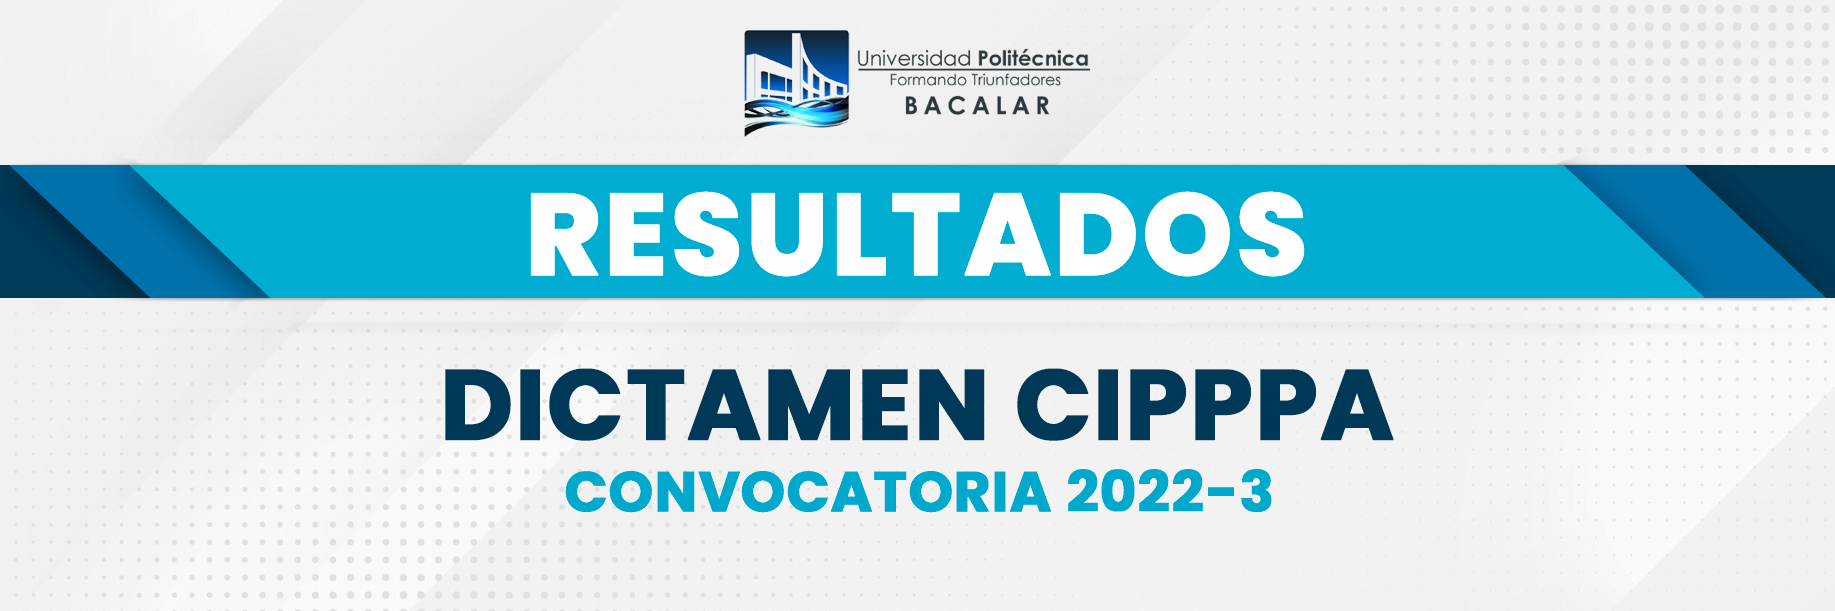 RESULTADOS CIPPPA 2022-3.png